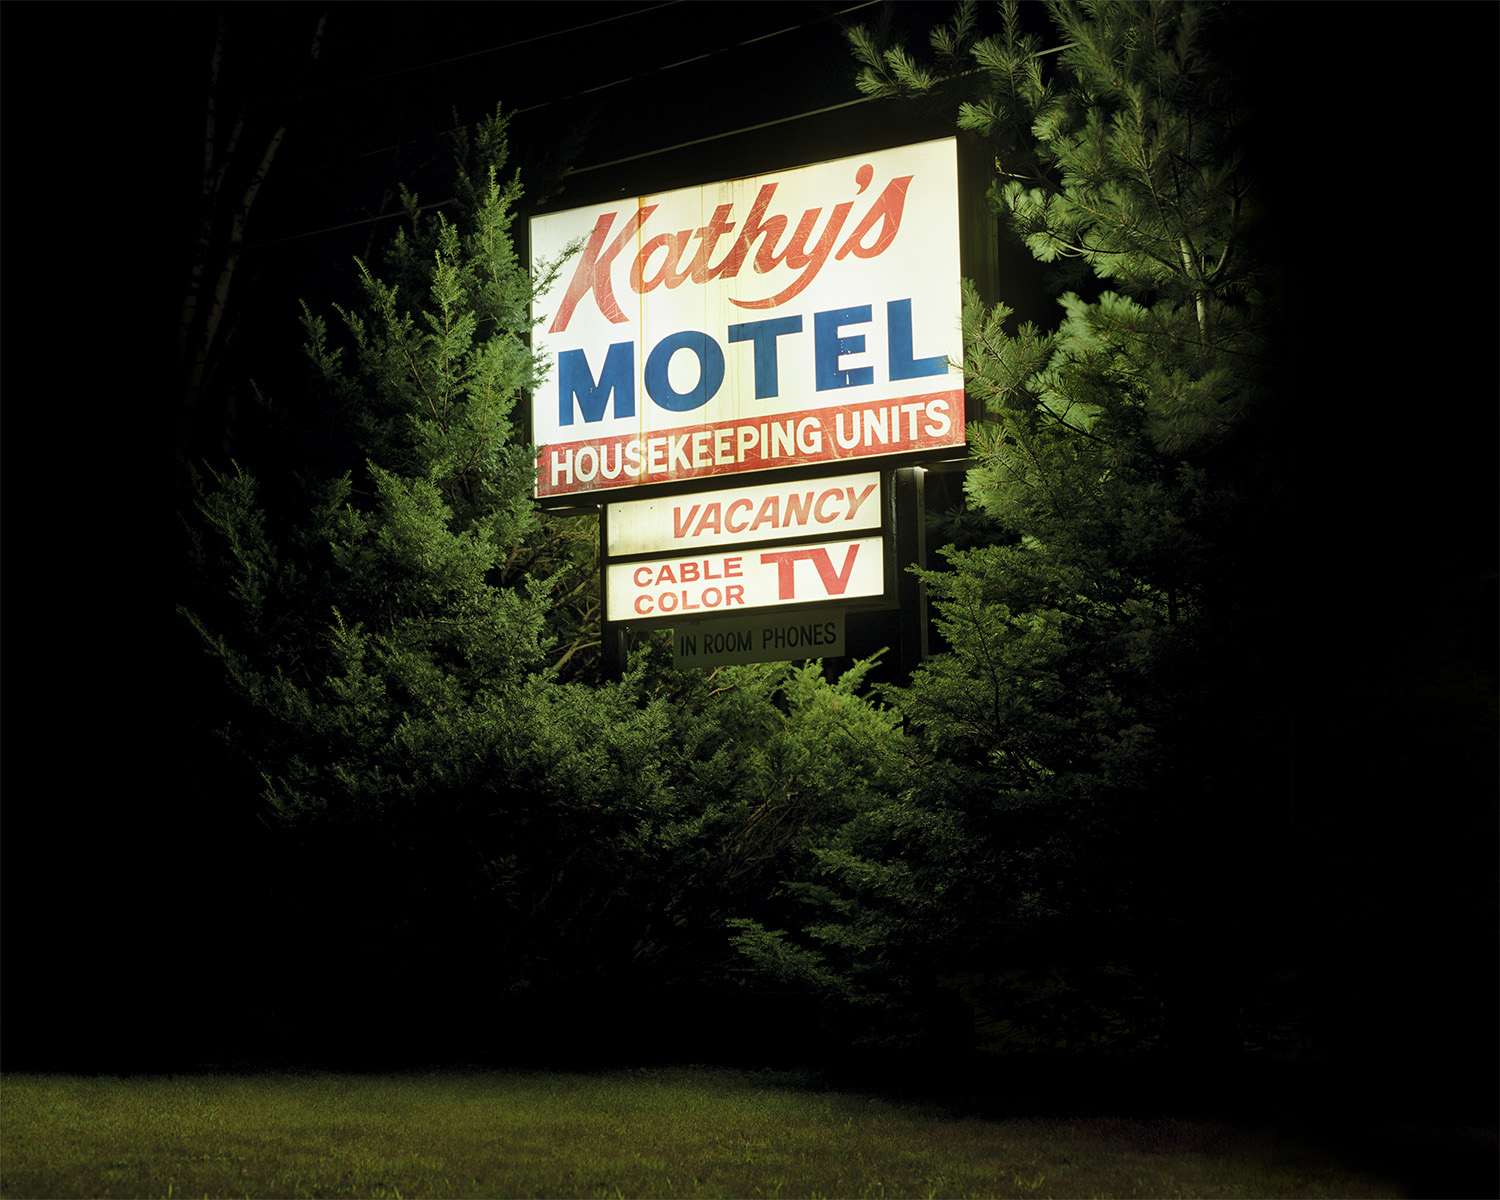 Kathy's Motel